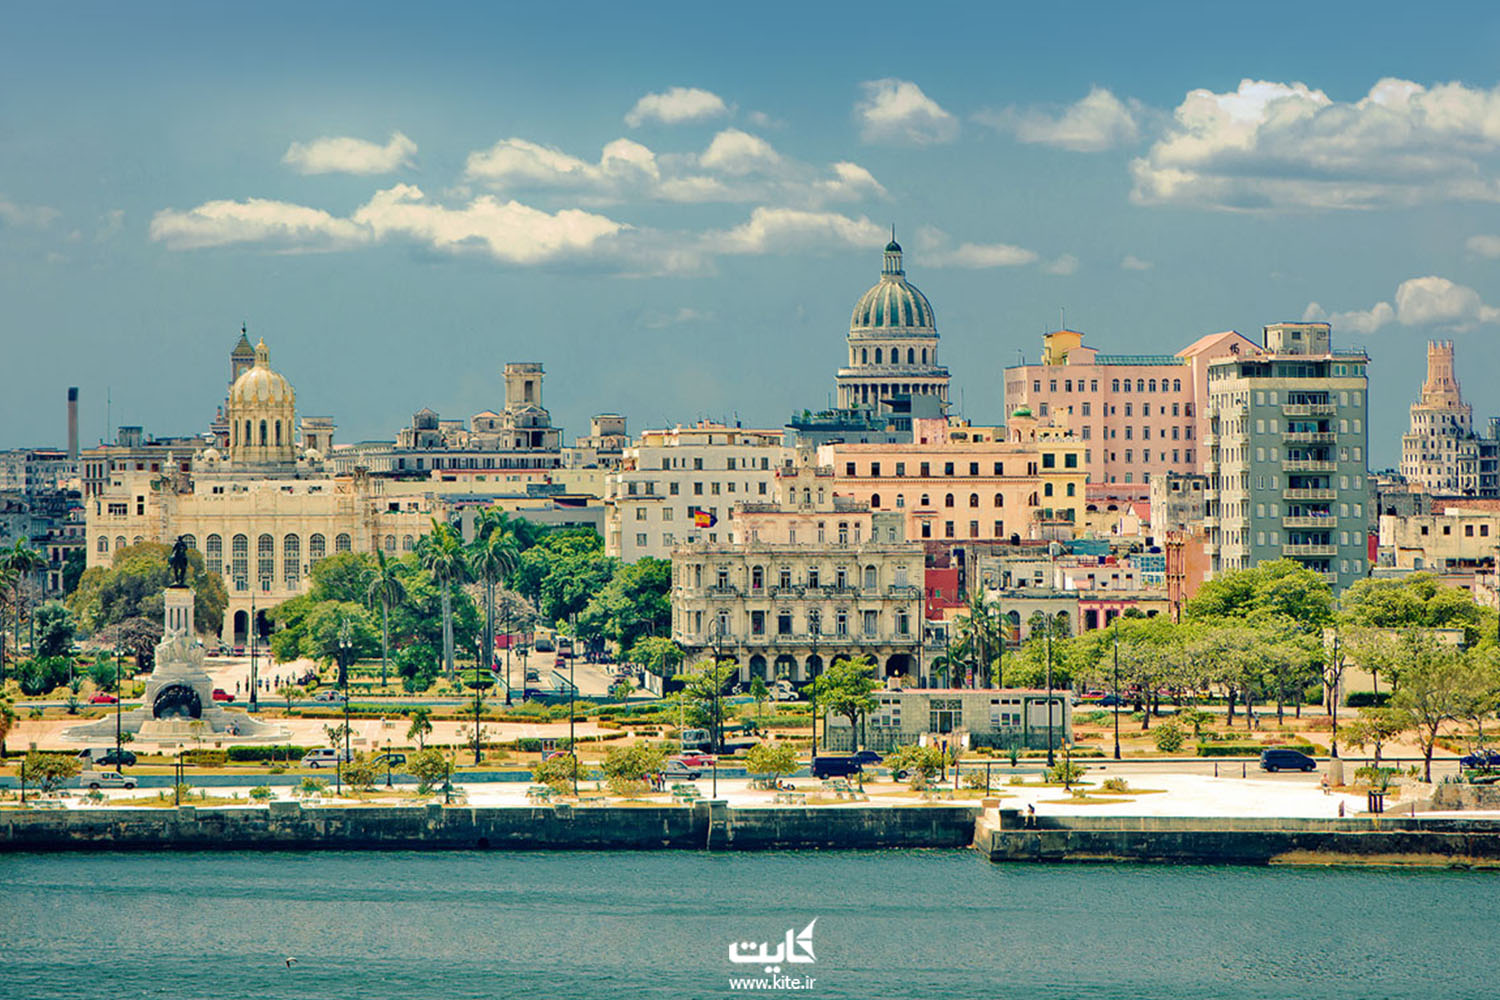 Кубинские названия. Гавана Куба. Гавана столица. Гавана столица Кубы и города. Старая Гавана Куба.